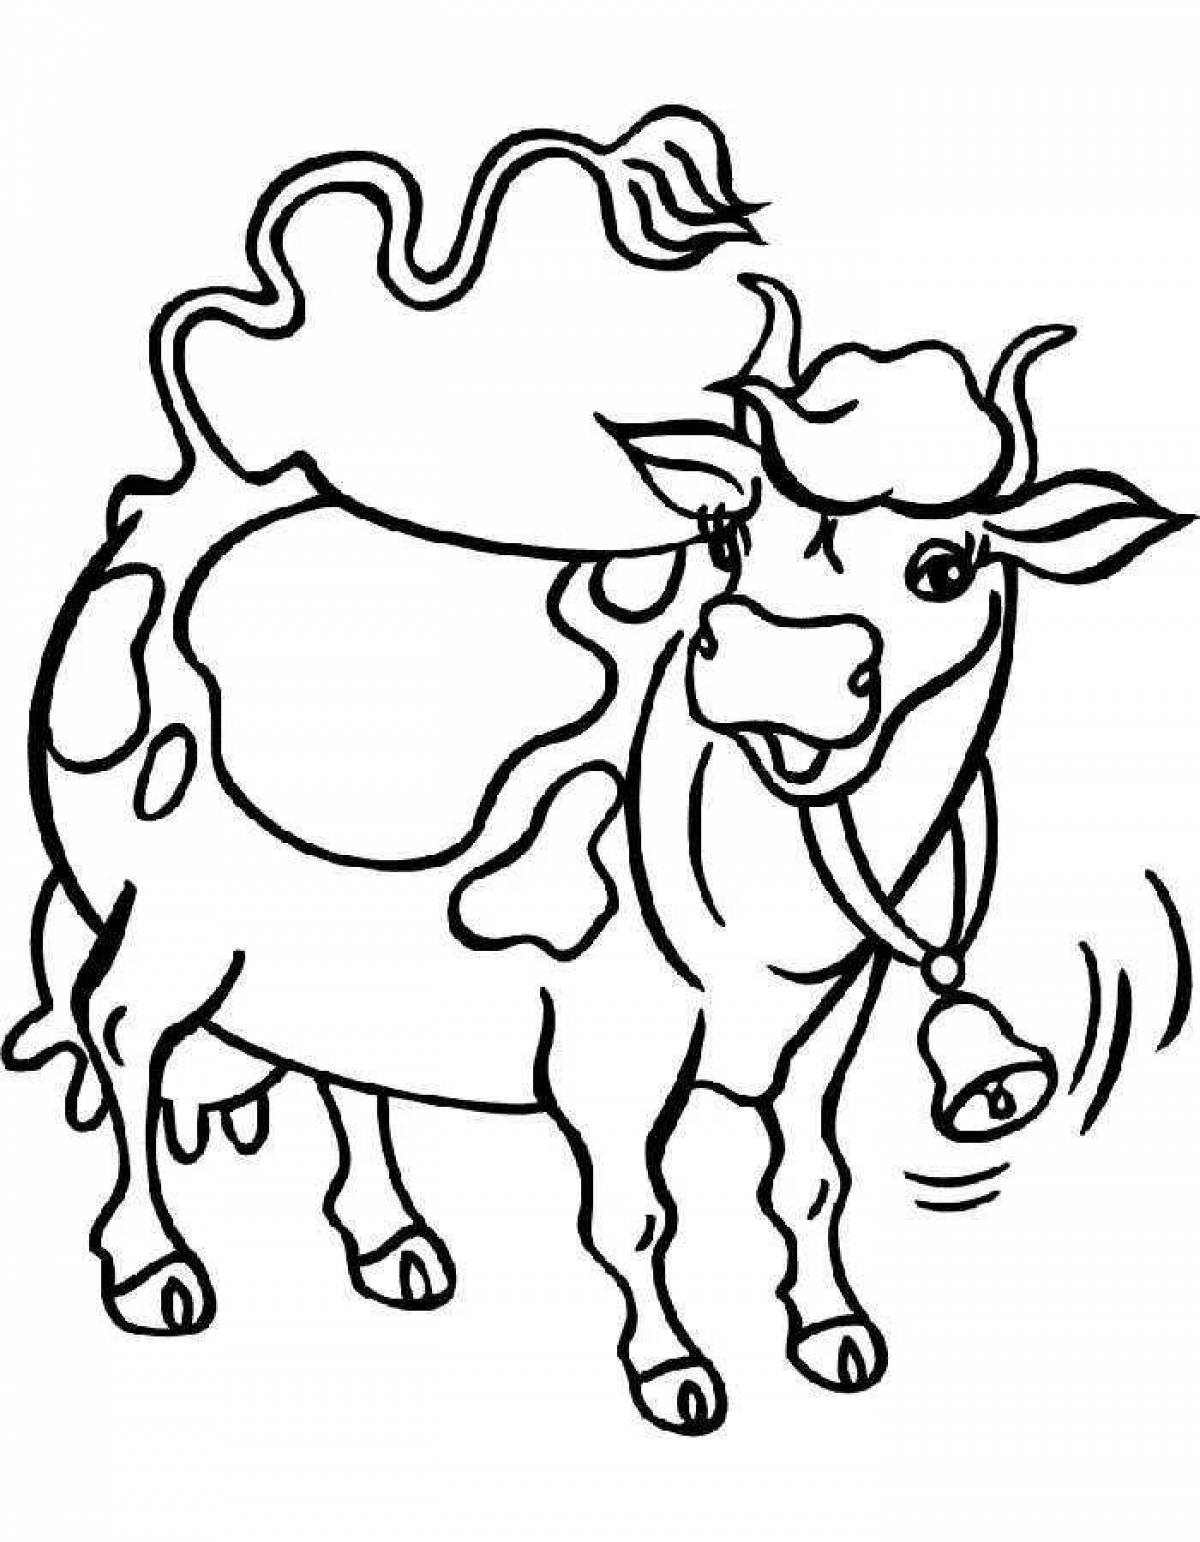 Распечатать коровку раскраску. Раскраска корова. Корова раскраска для детей. Корова картинка для детей раскраска. Корова рисунок для раскрашивания.